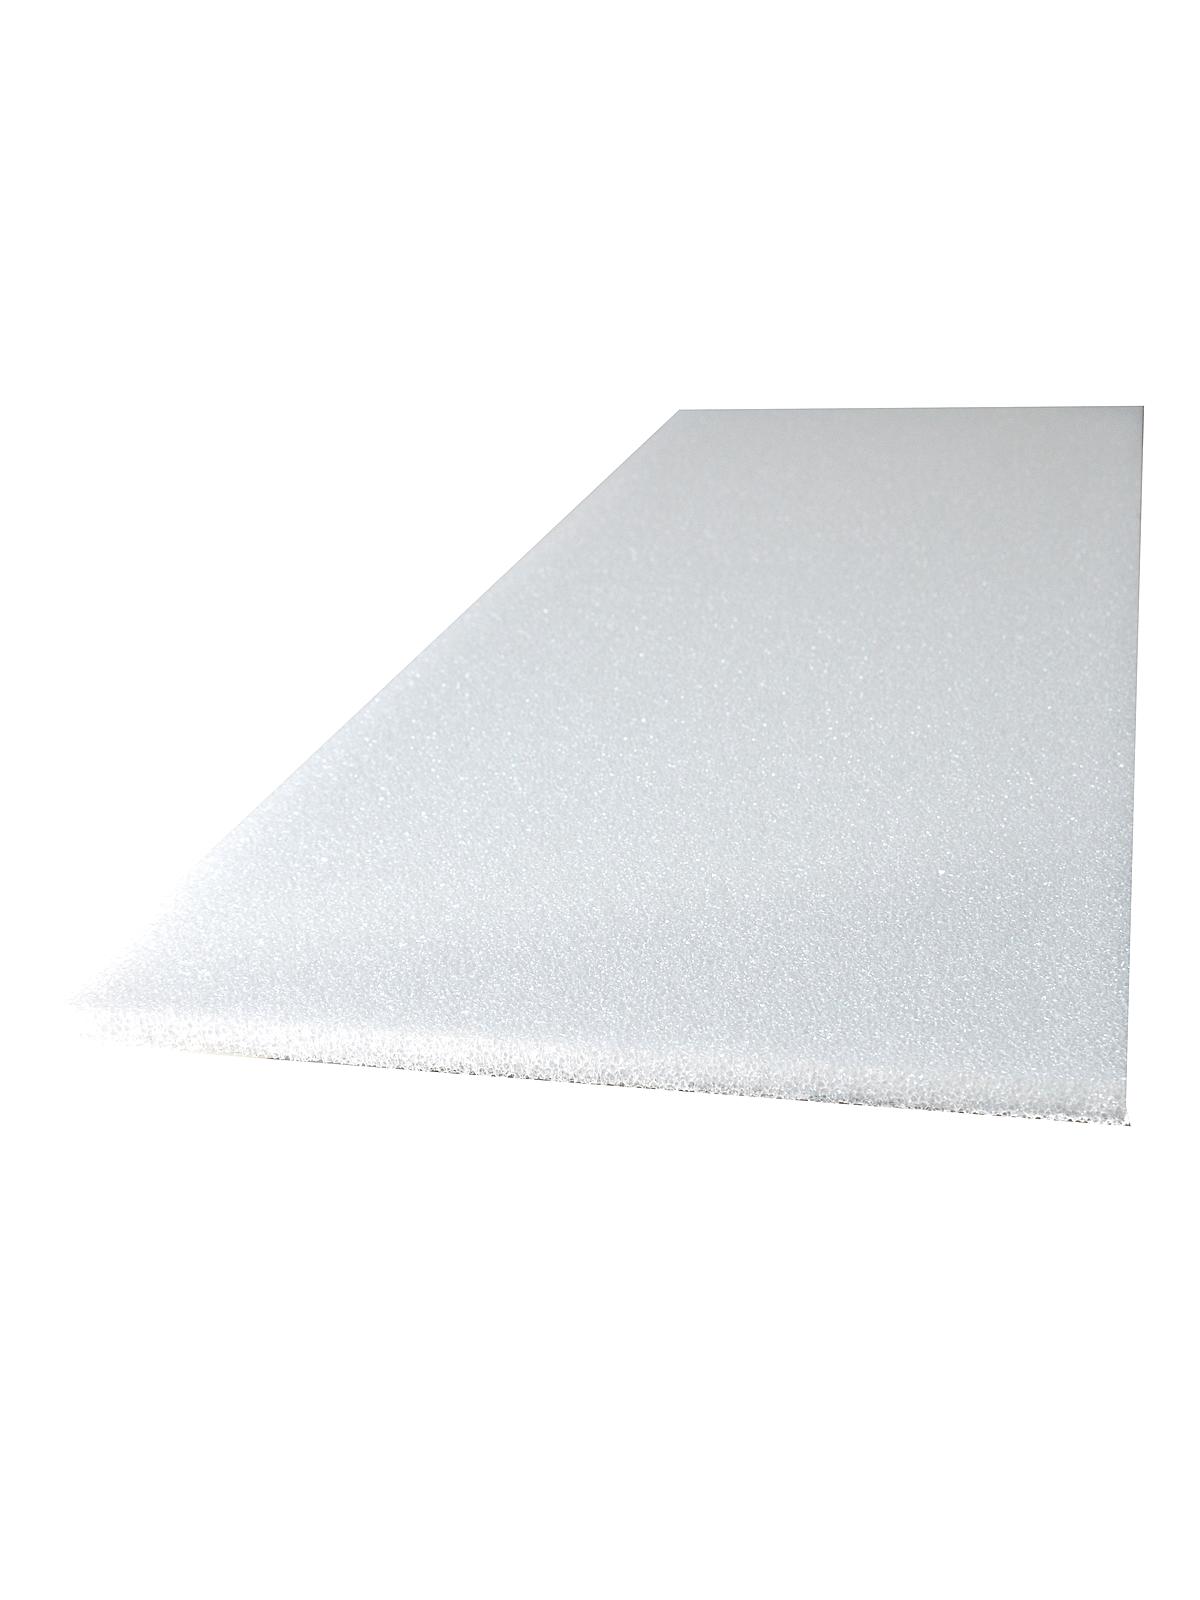 Styrofoam Sheets 1 2 In. 12 In. X 36 In.